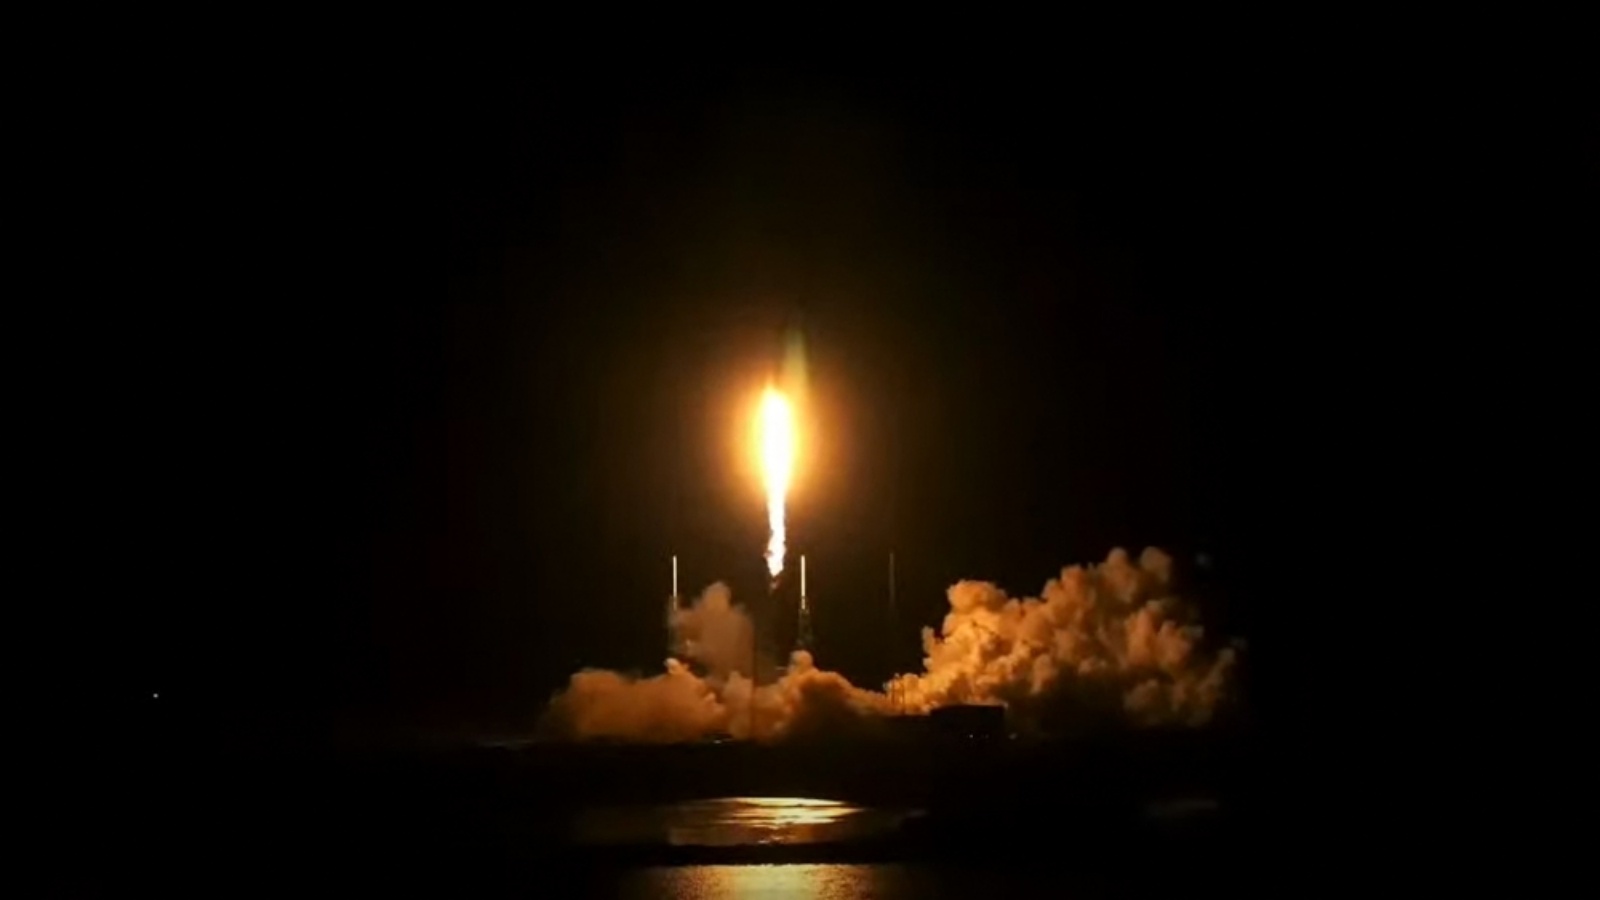 من قناة ناسا التلفزيونية التي تعرض انبعاثات التروبوسفير: أداة رصد التلوث (TEMPO) من وكالة ناسا في الساعة 12:30 صباحًا (0430 بتوقيت جرينتش) في 7 أبريل 2023 كحمولة على Intelsat 40E على متن صاروخ SpaceX Falcon 9 من كيب كانافيرال محطة القوة الفضائية في فلوريدا